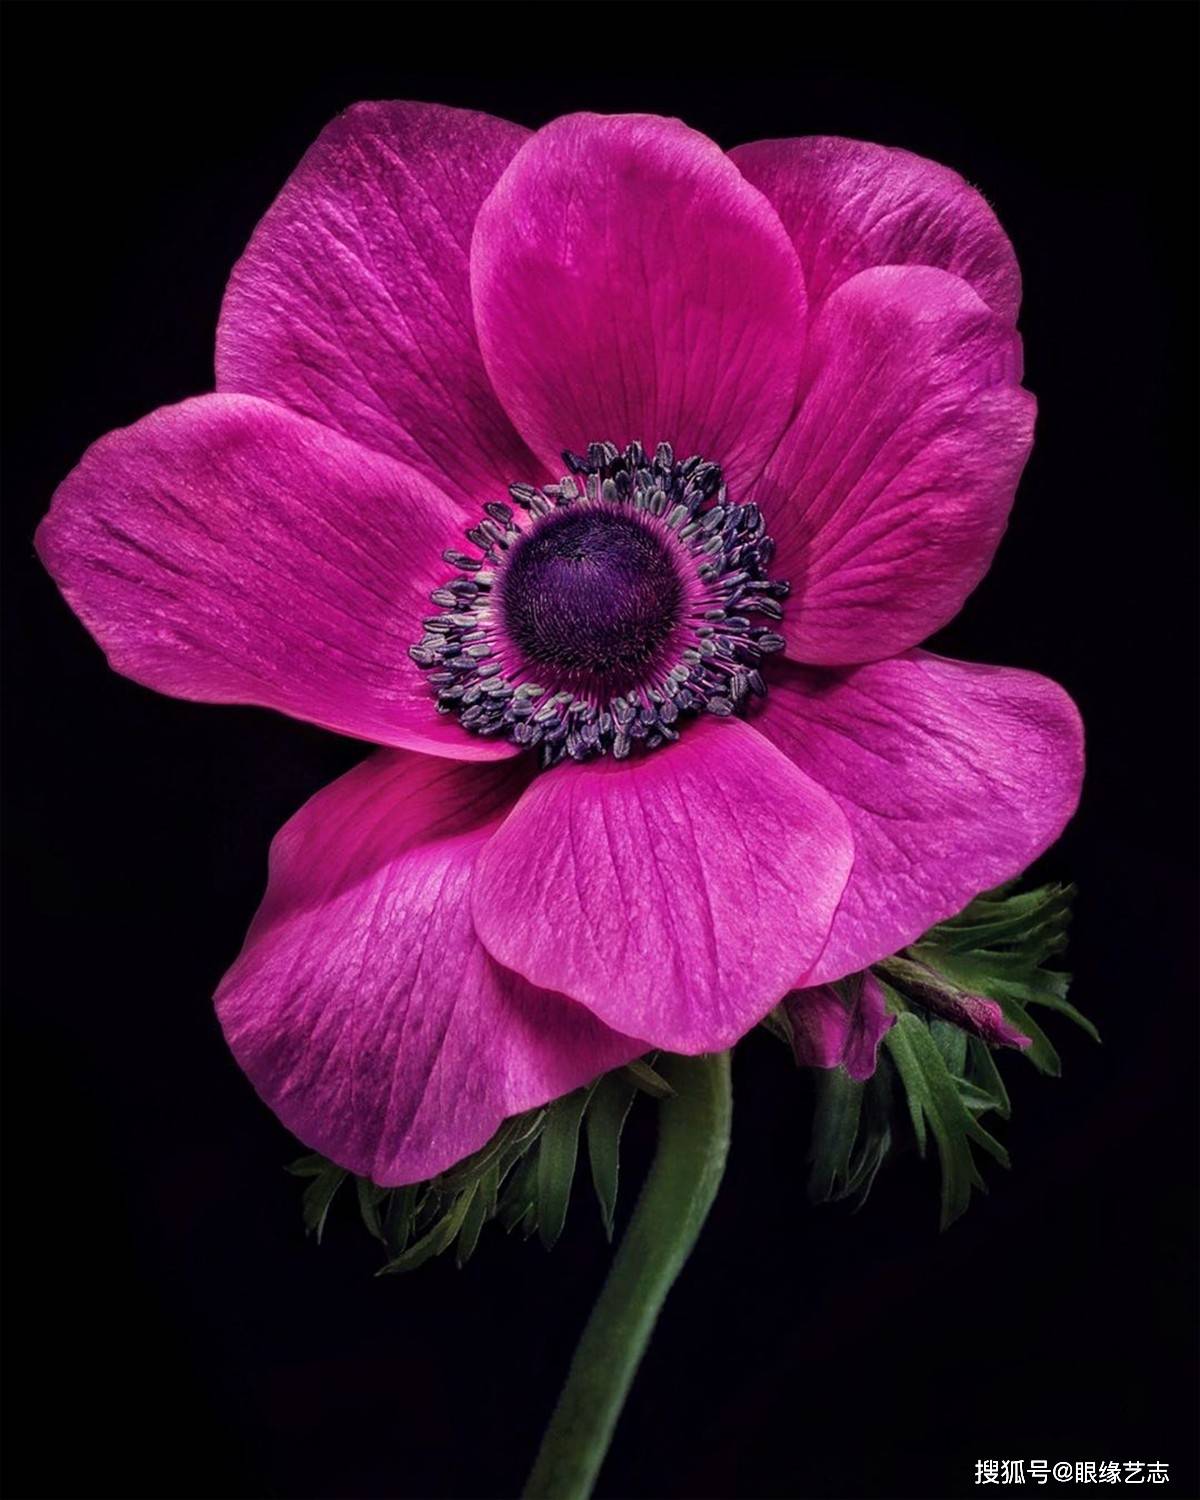 原创黛比的花语:识花更要懂花,花卉摄影师的光影留香